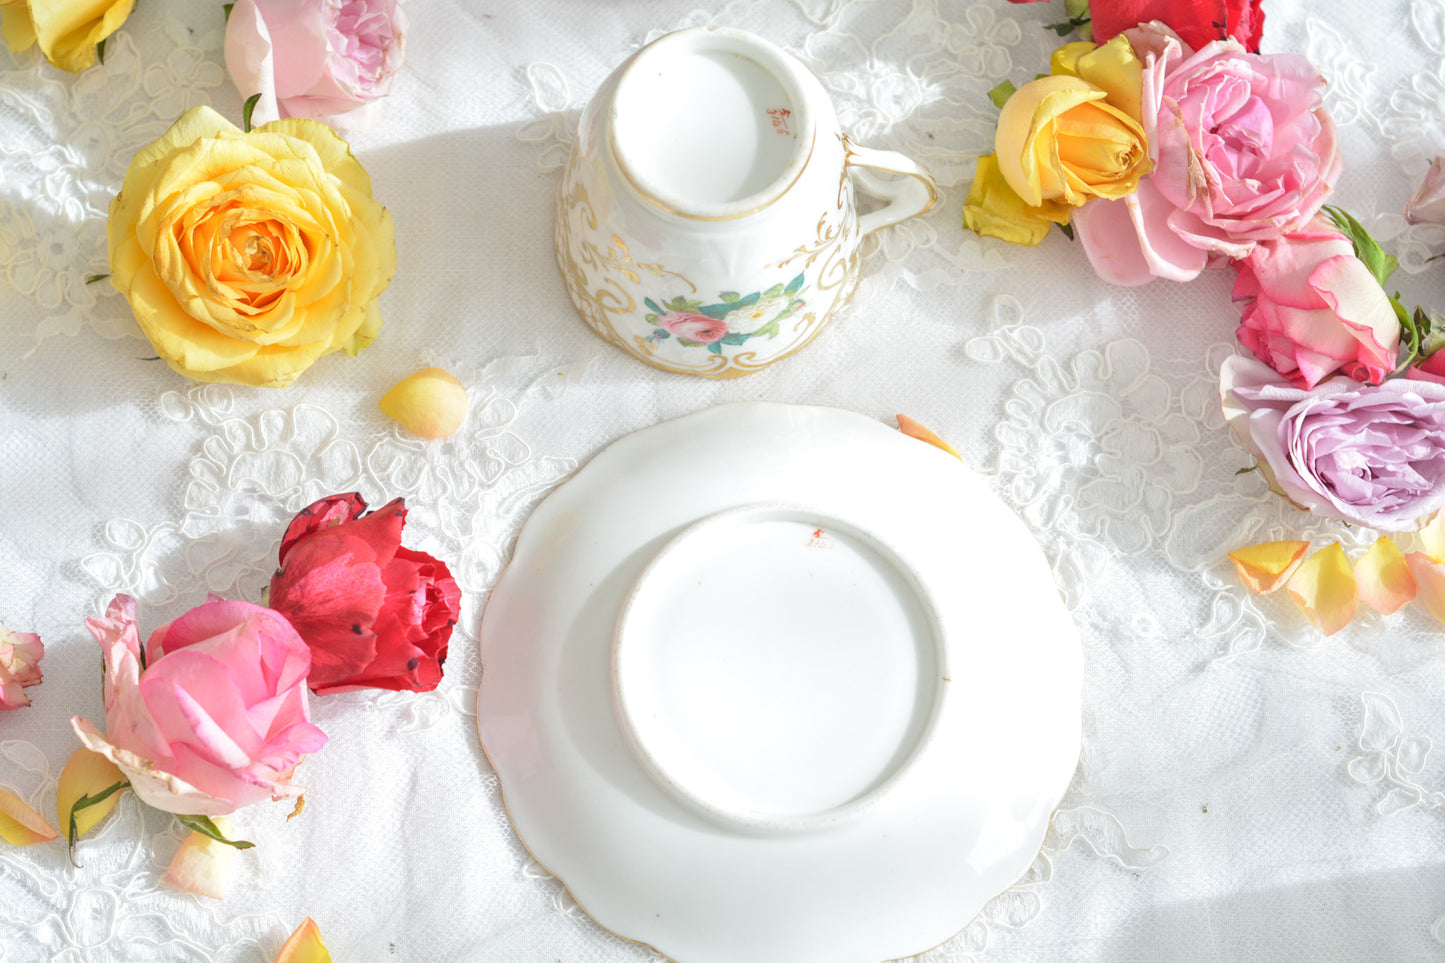 リッジウェイのフォリエイジシェイプのカップ&ソーサー。ハンドル部分には葉っぱの模様がついていてとても可愛らしいシェイプで、リッジウェイのお品の中でも人気の高いシリーズの１つ。こちらは、ハンドペイントでピンクと白のバラが可愛らしく描かれています。金彩と白磁との美しいコントラストに薔薇の花が引き立ちます。 優雅なティータイムにぴったりのカップです。